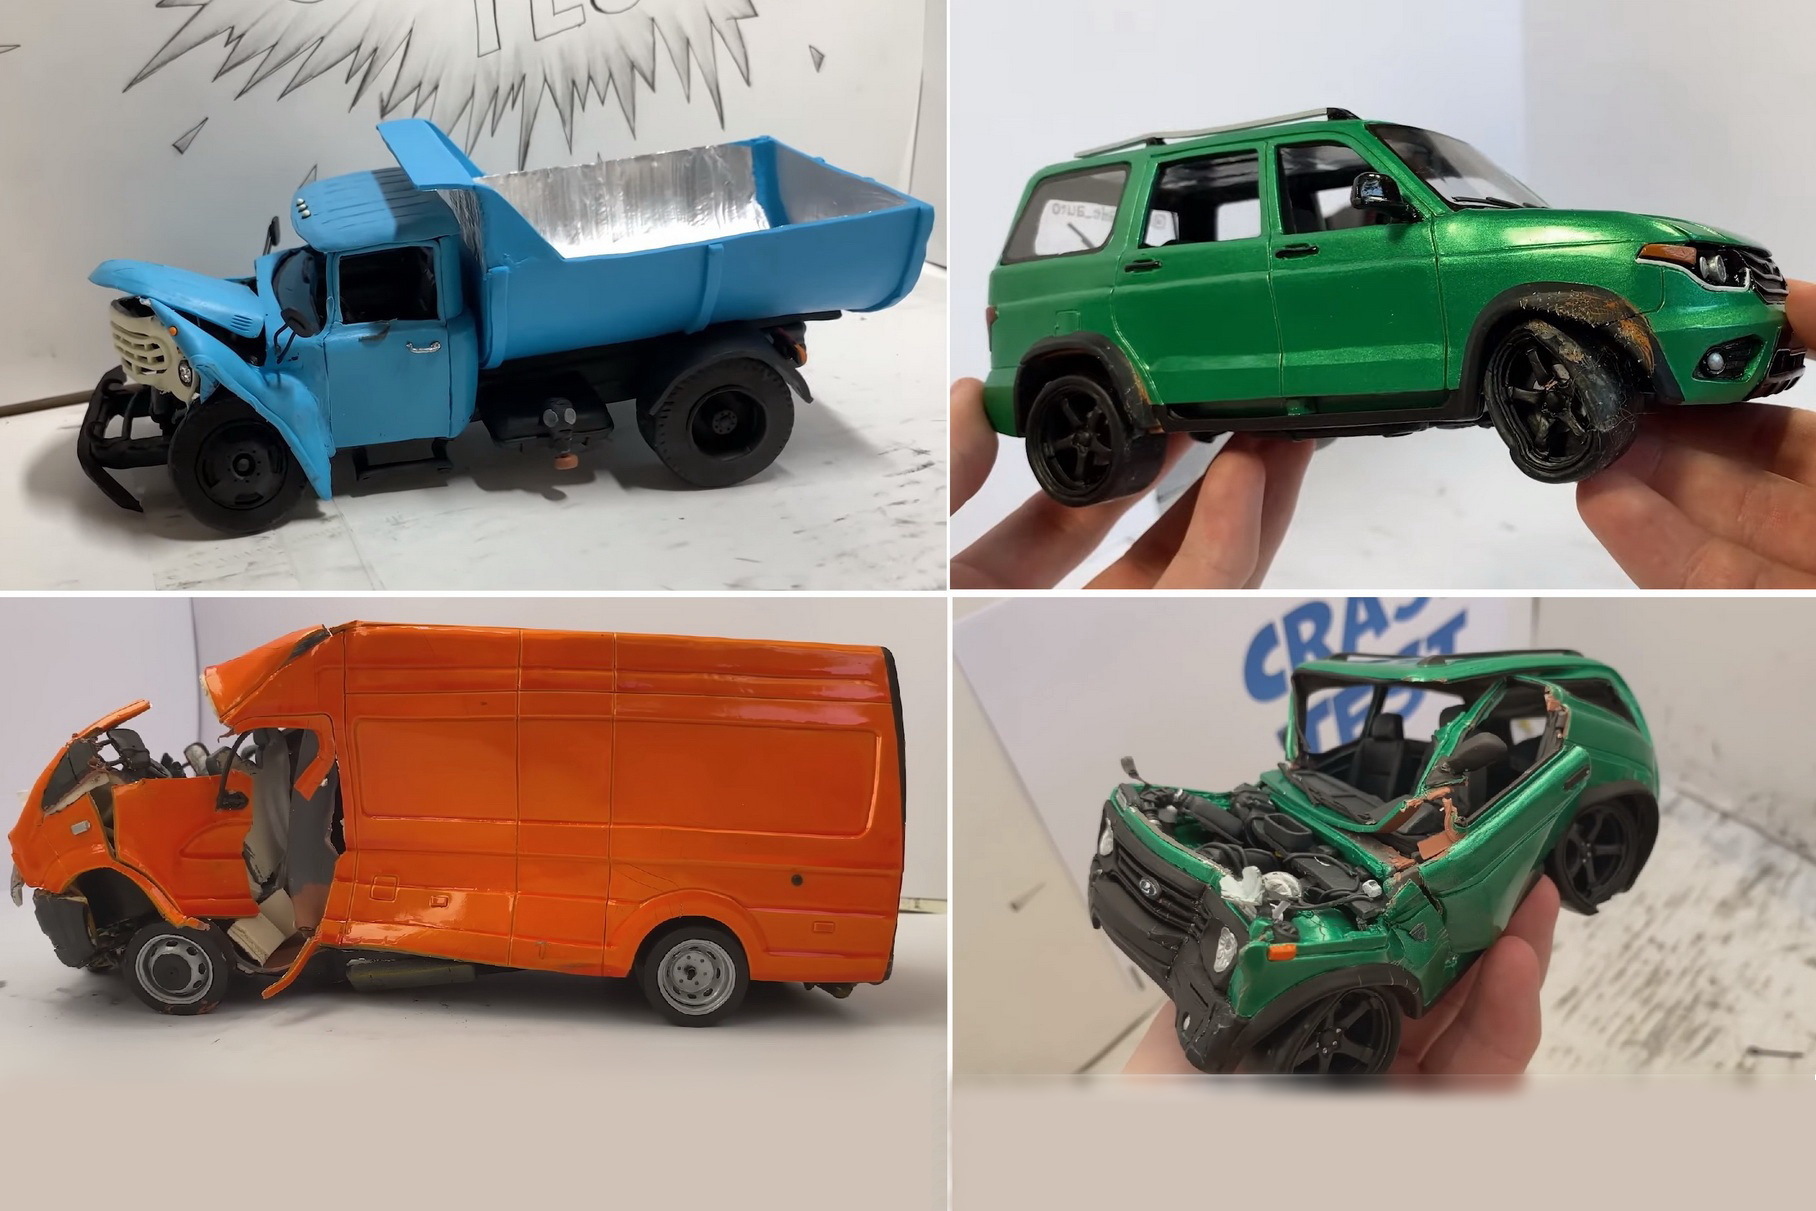 Умельец показал видео краш-тестов пластилиновых моделей УАЗ, ГАЗ и ЗИЛ